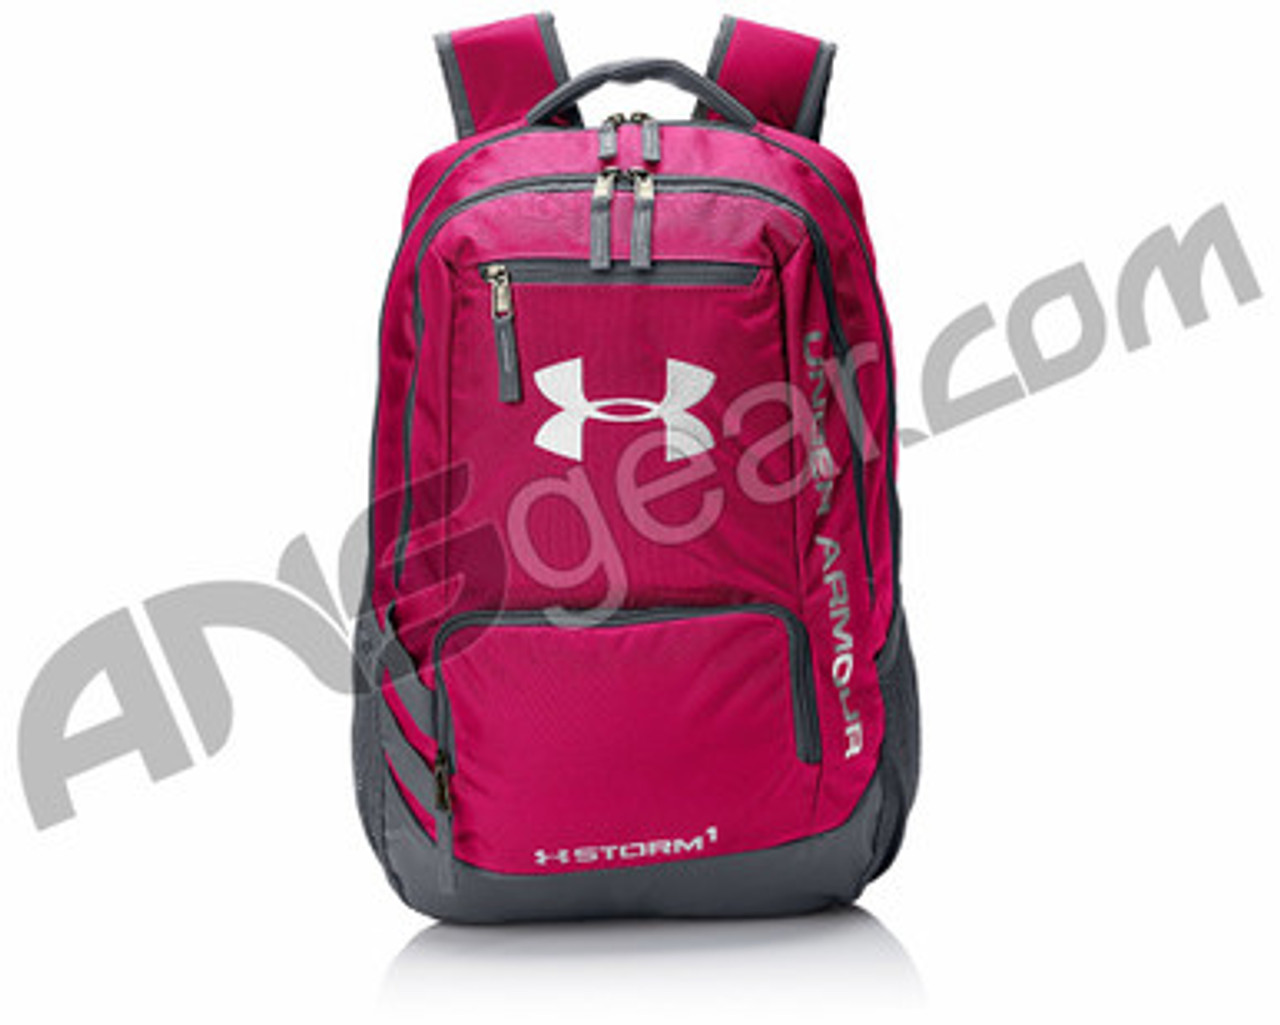 Hustle II Backpack, Tropic Pink, One Size 